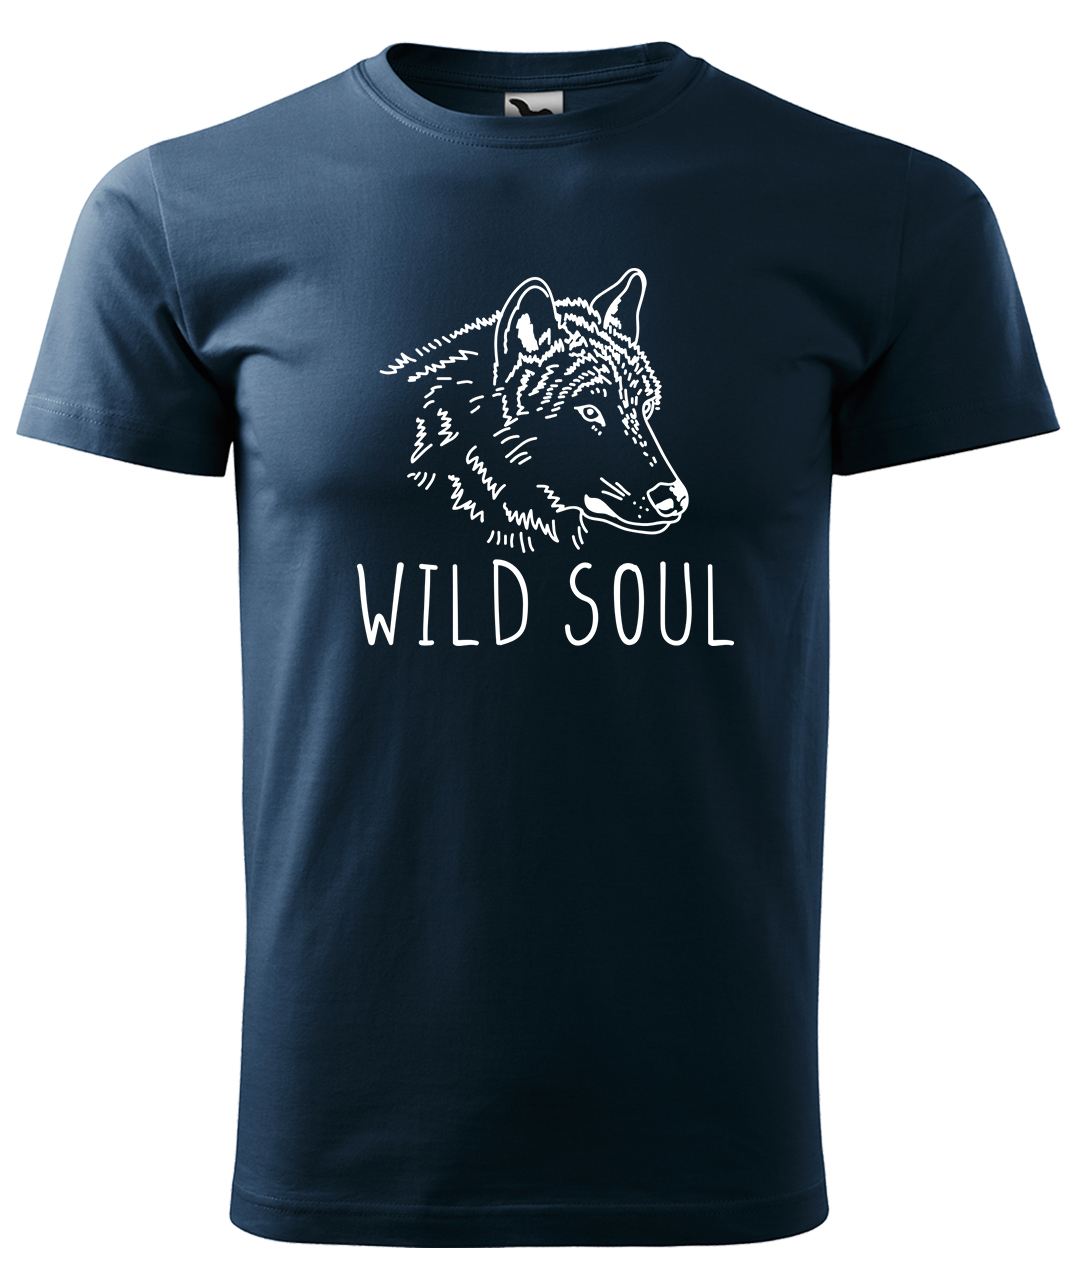 Dětské tričko s vlkem - Wild soul Velikost: 4 roky / 110 cm, Barva: Námořní modrá (02), Délka rukávu: Krátký rukáv